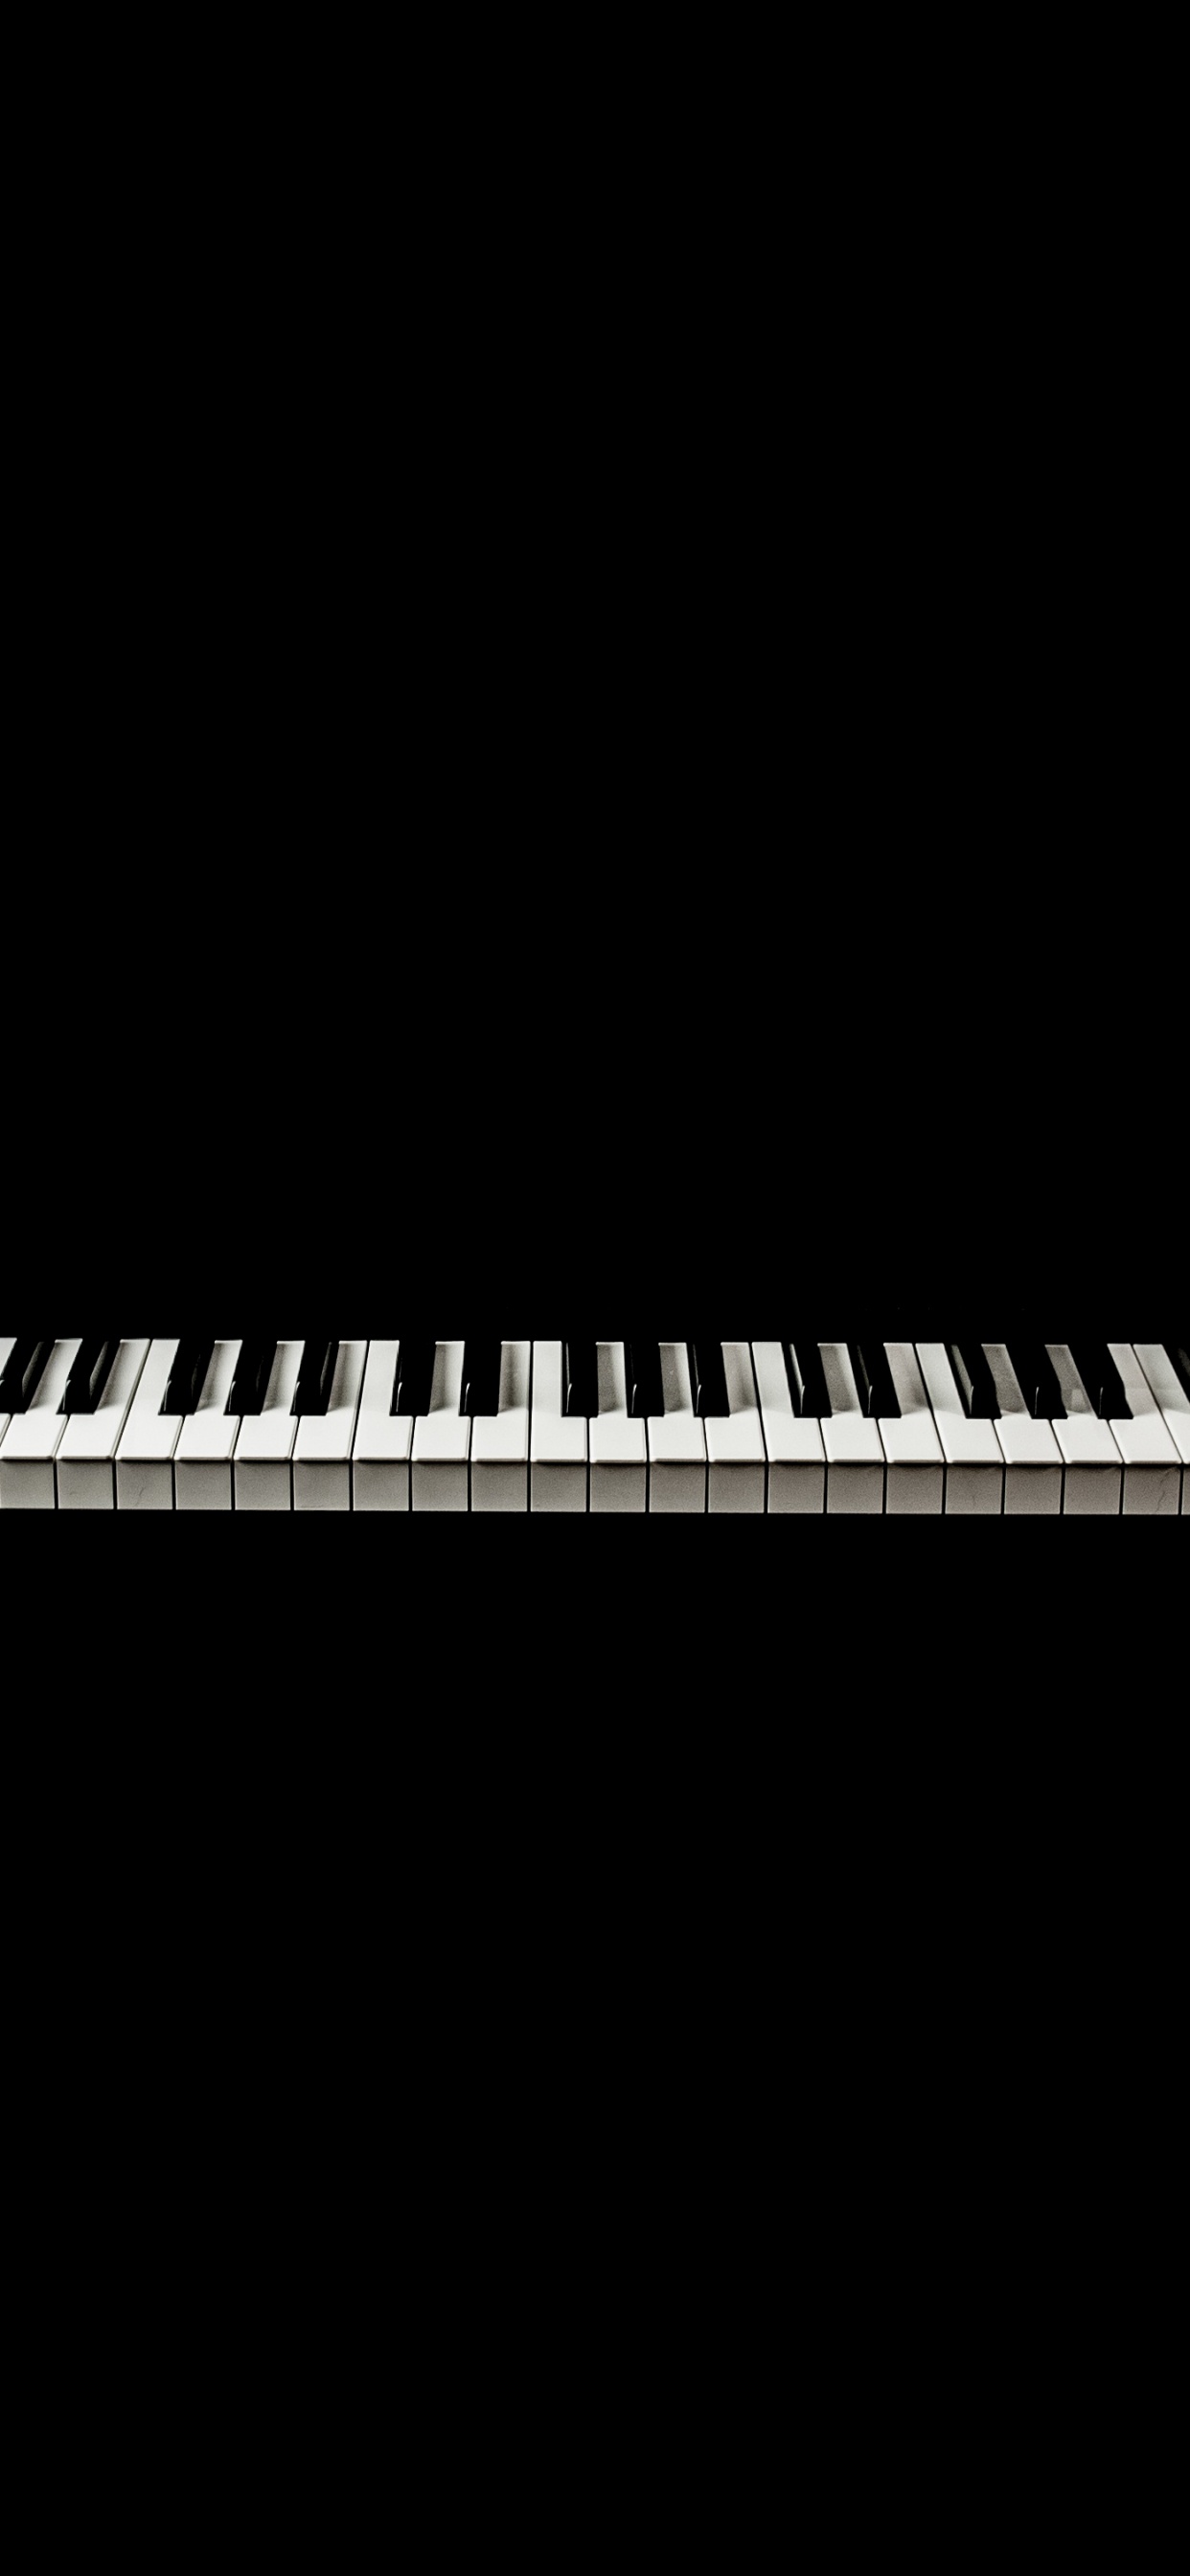 音乐键盘, 数字钢琴, 电子琴, 钢琴, 键盘 壁纸 1242x2688 允许